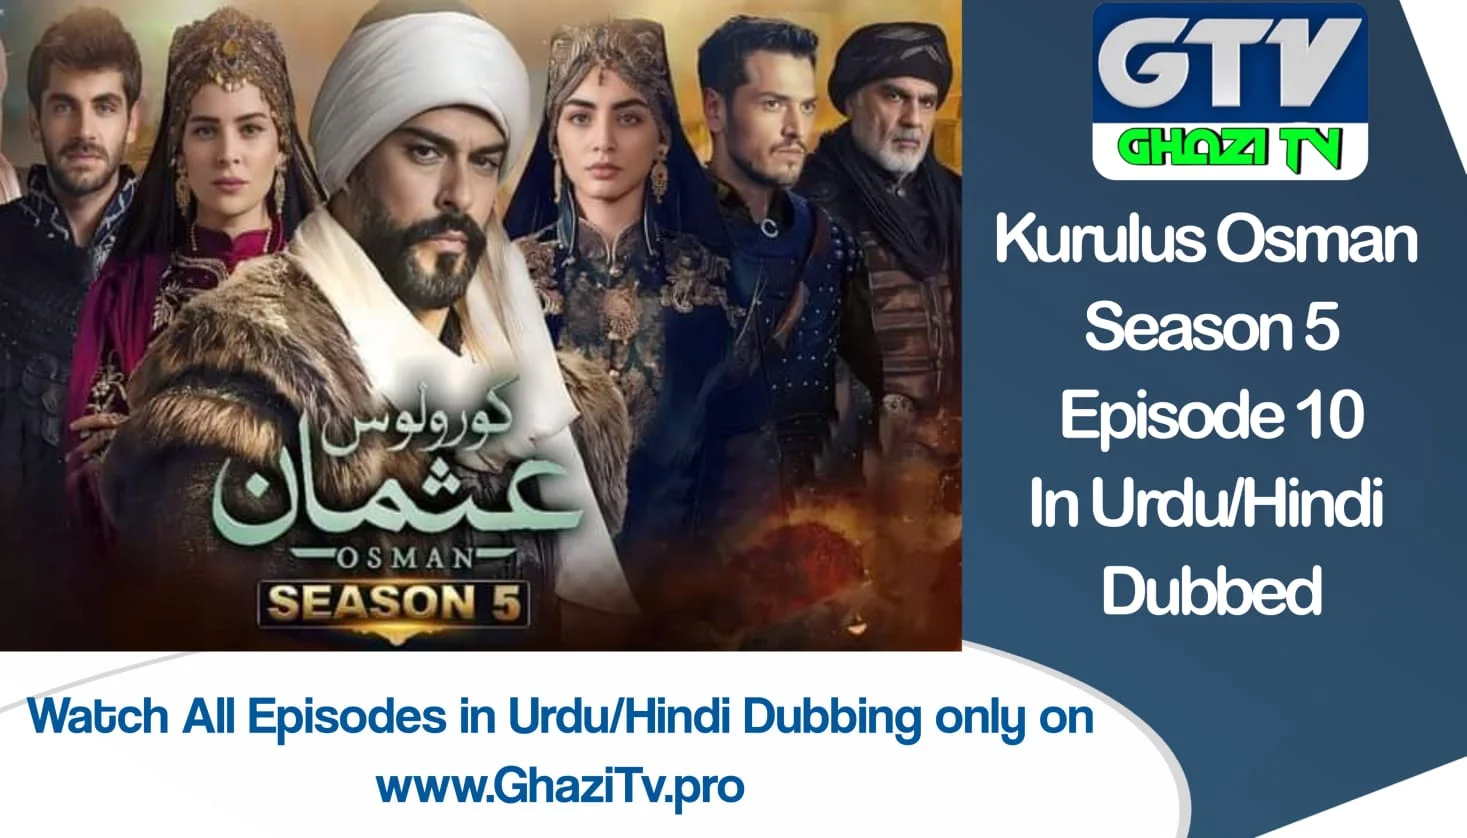 Kurulus Osman Season 5 Episode 10 in Urdu Dubbing